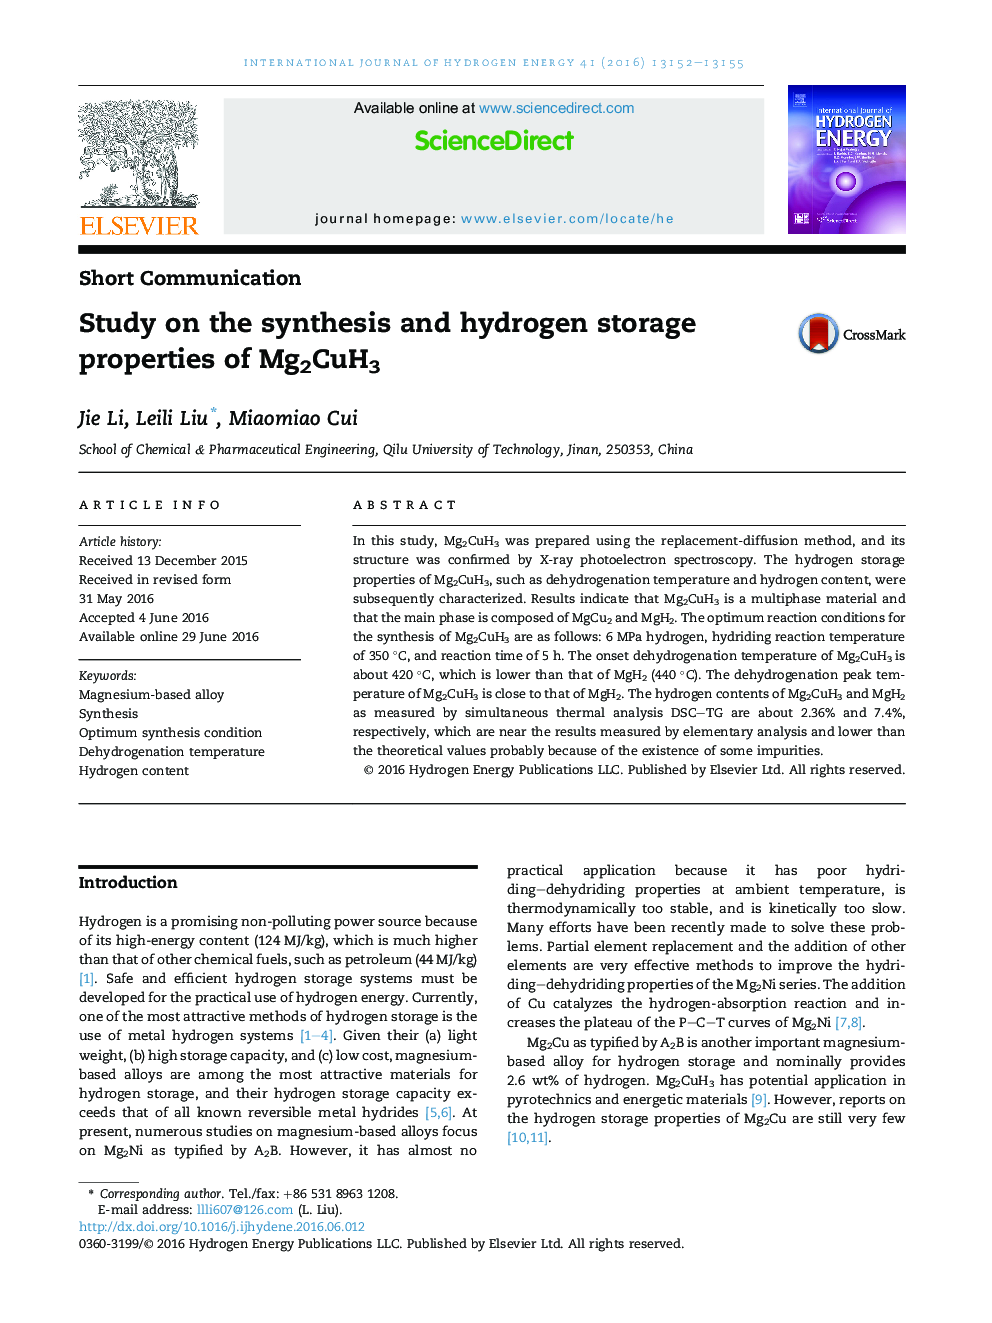 بررسی سنتز و ذخیره هیدروژن خواص Mg2CuH3